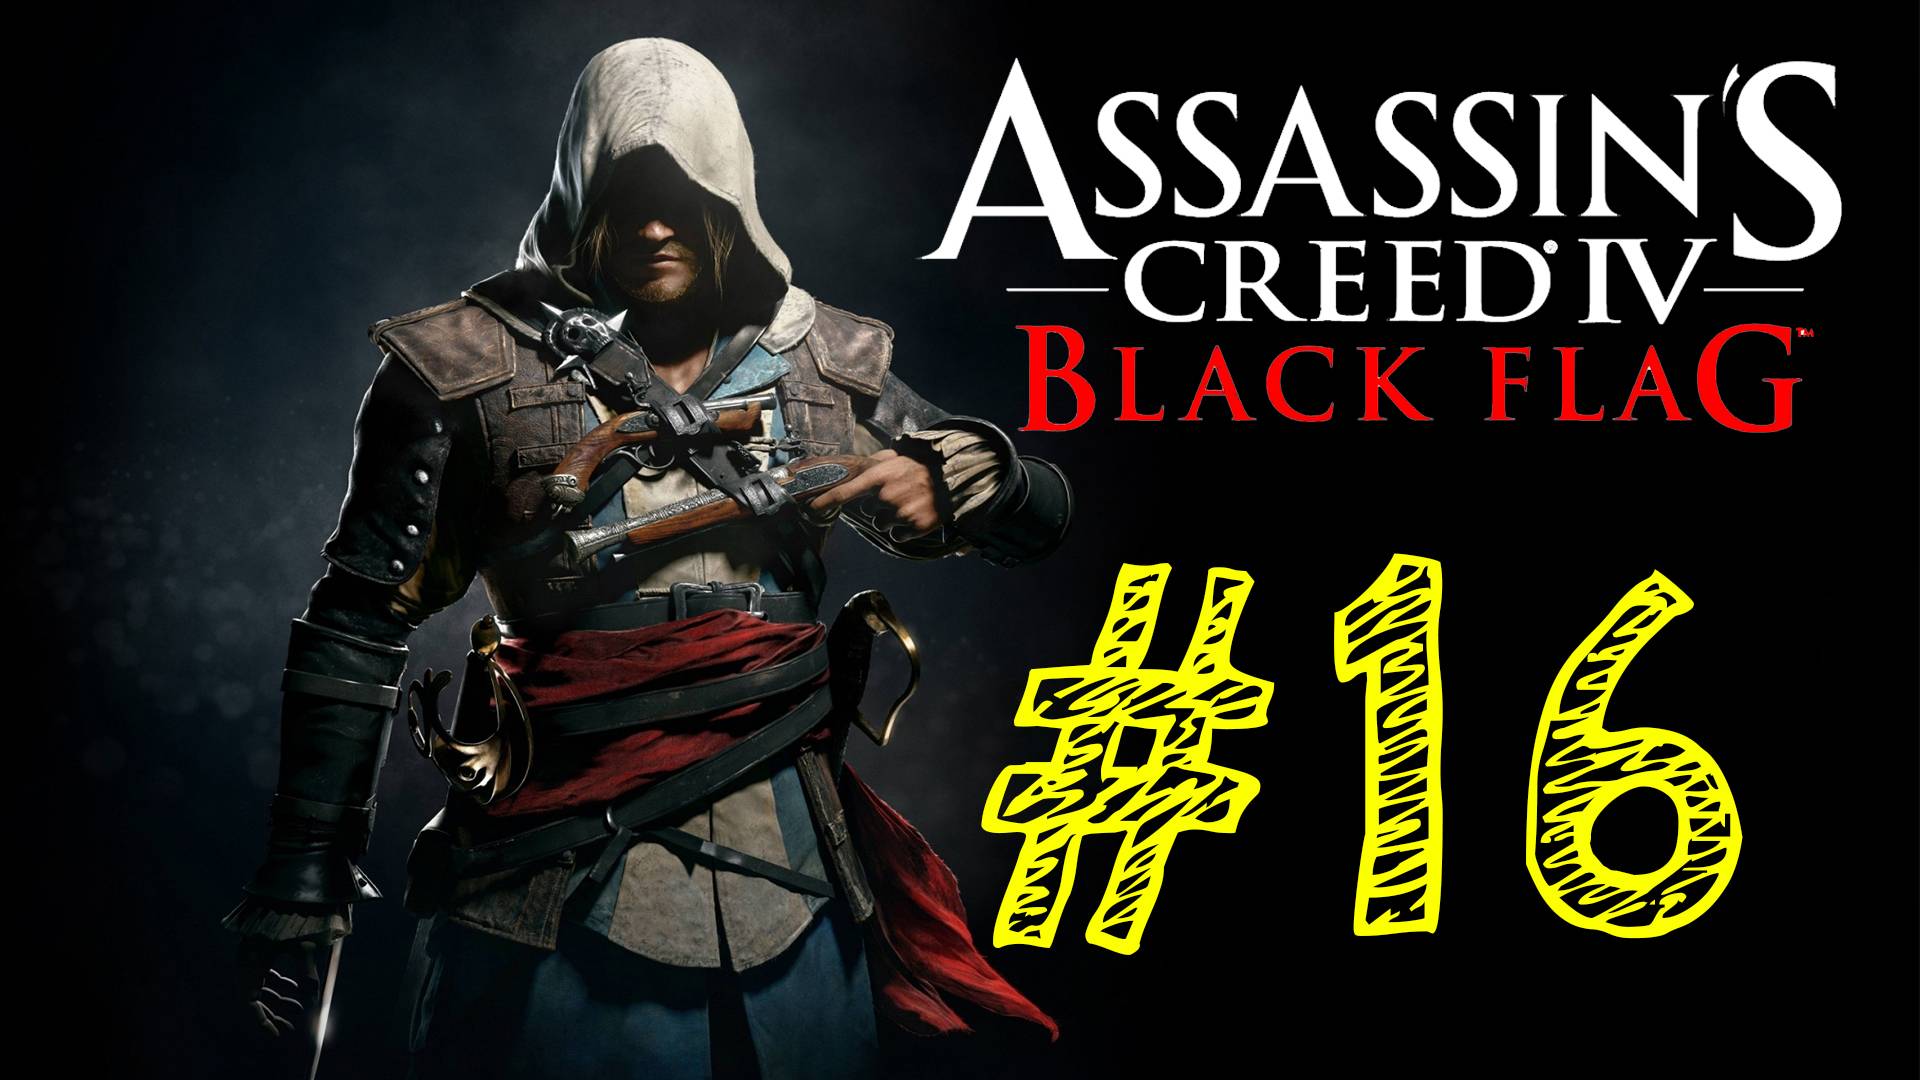 16 выпуск. ВЕК ПИРАТСТВА. Прохождение компании. Assassins Creed 4 Black Flag. Ассасин 4 черный флаг